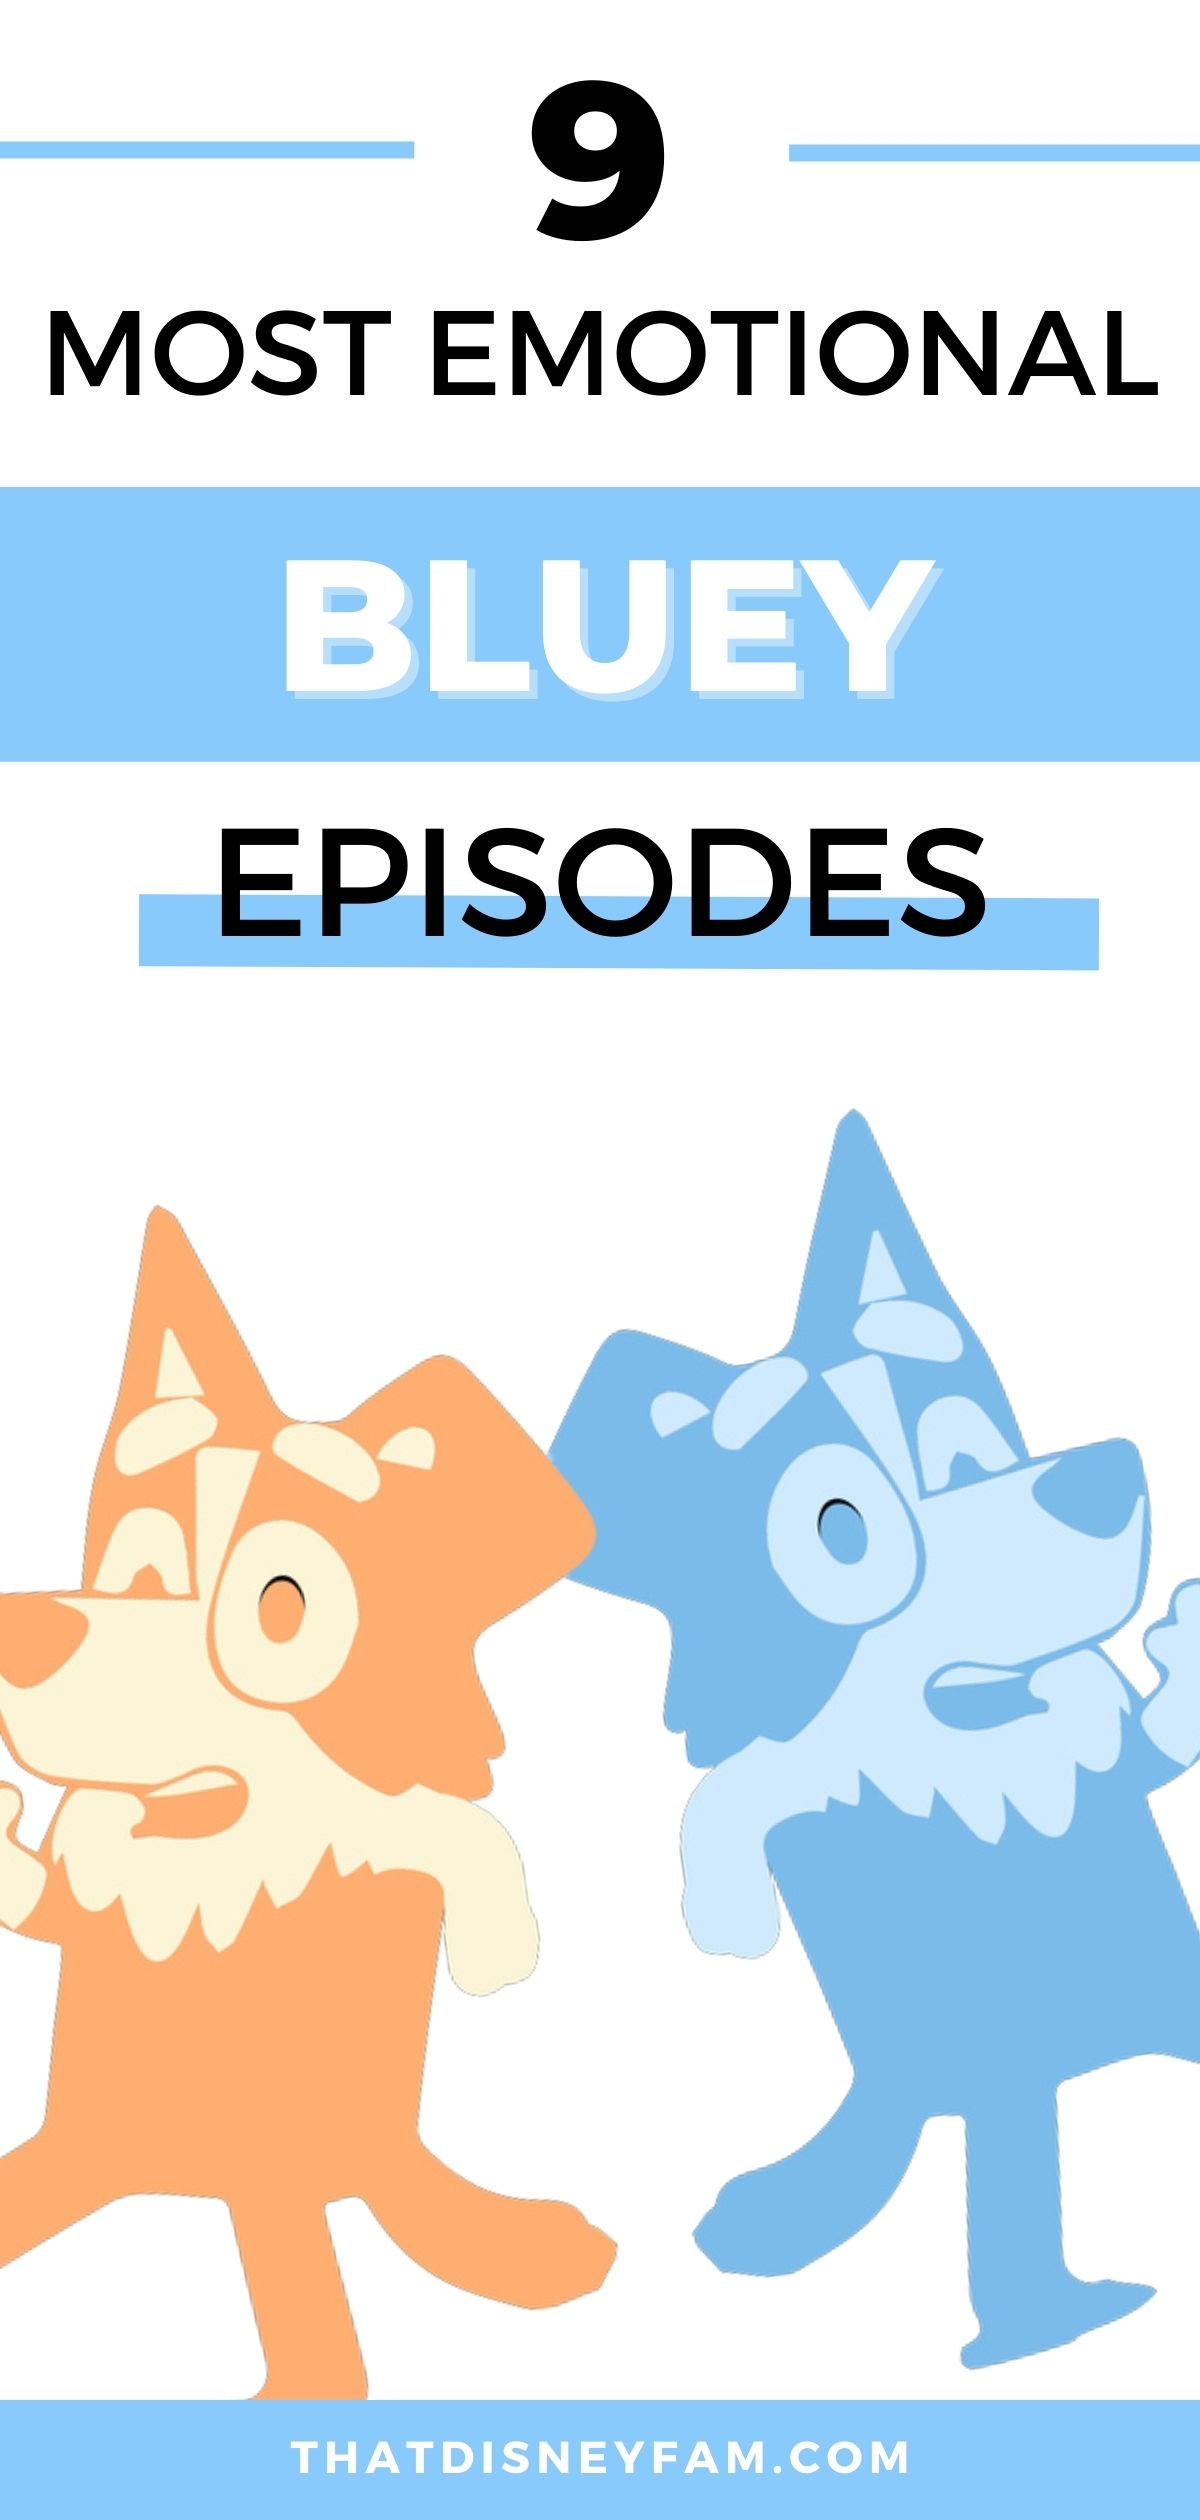 emotional bluey episodes